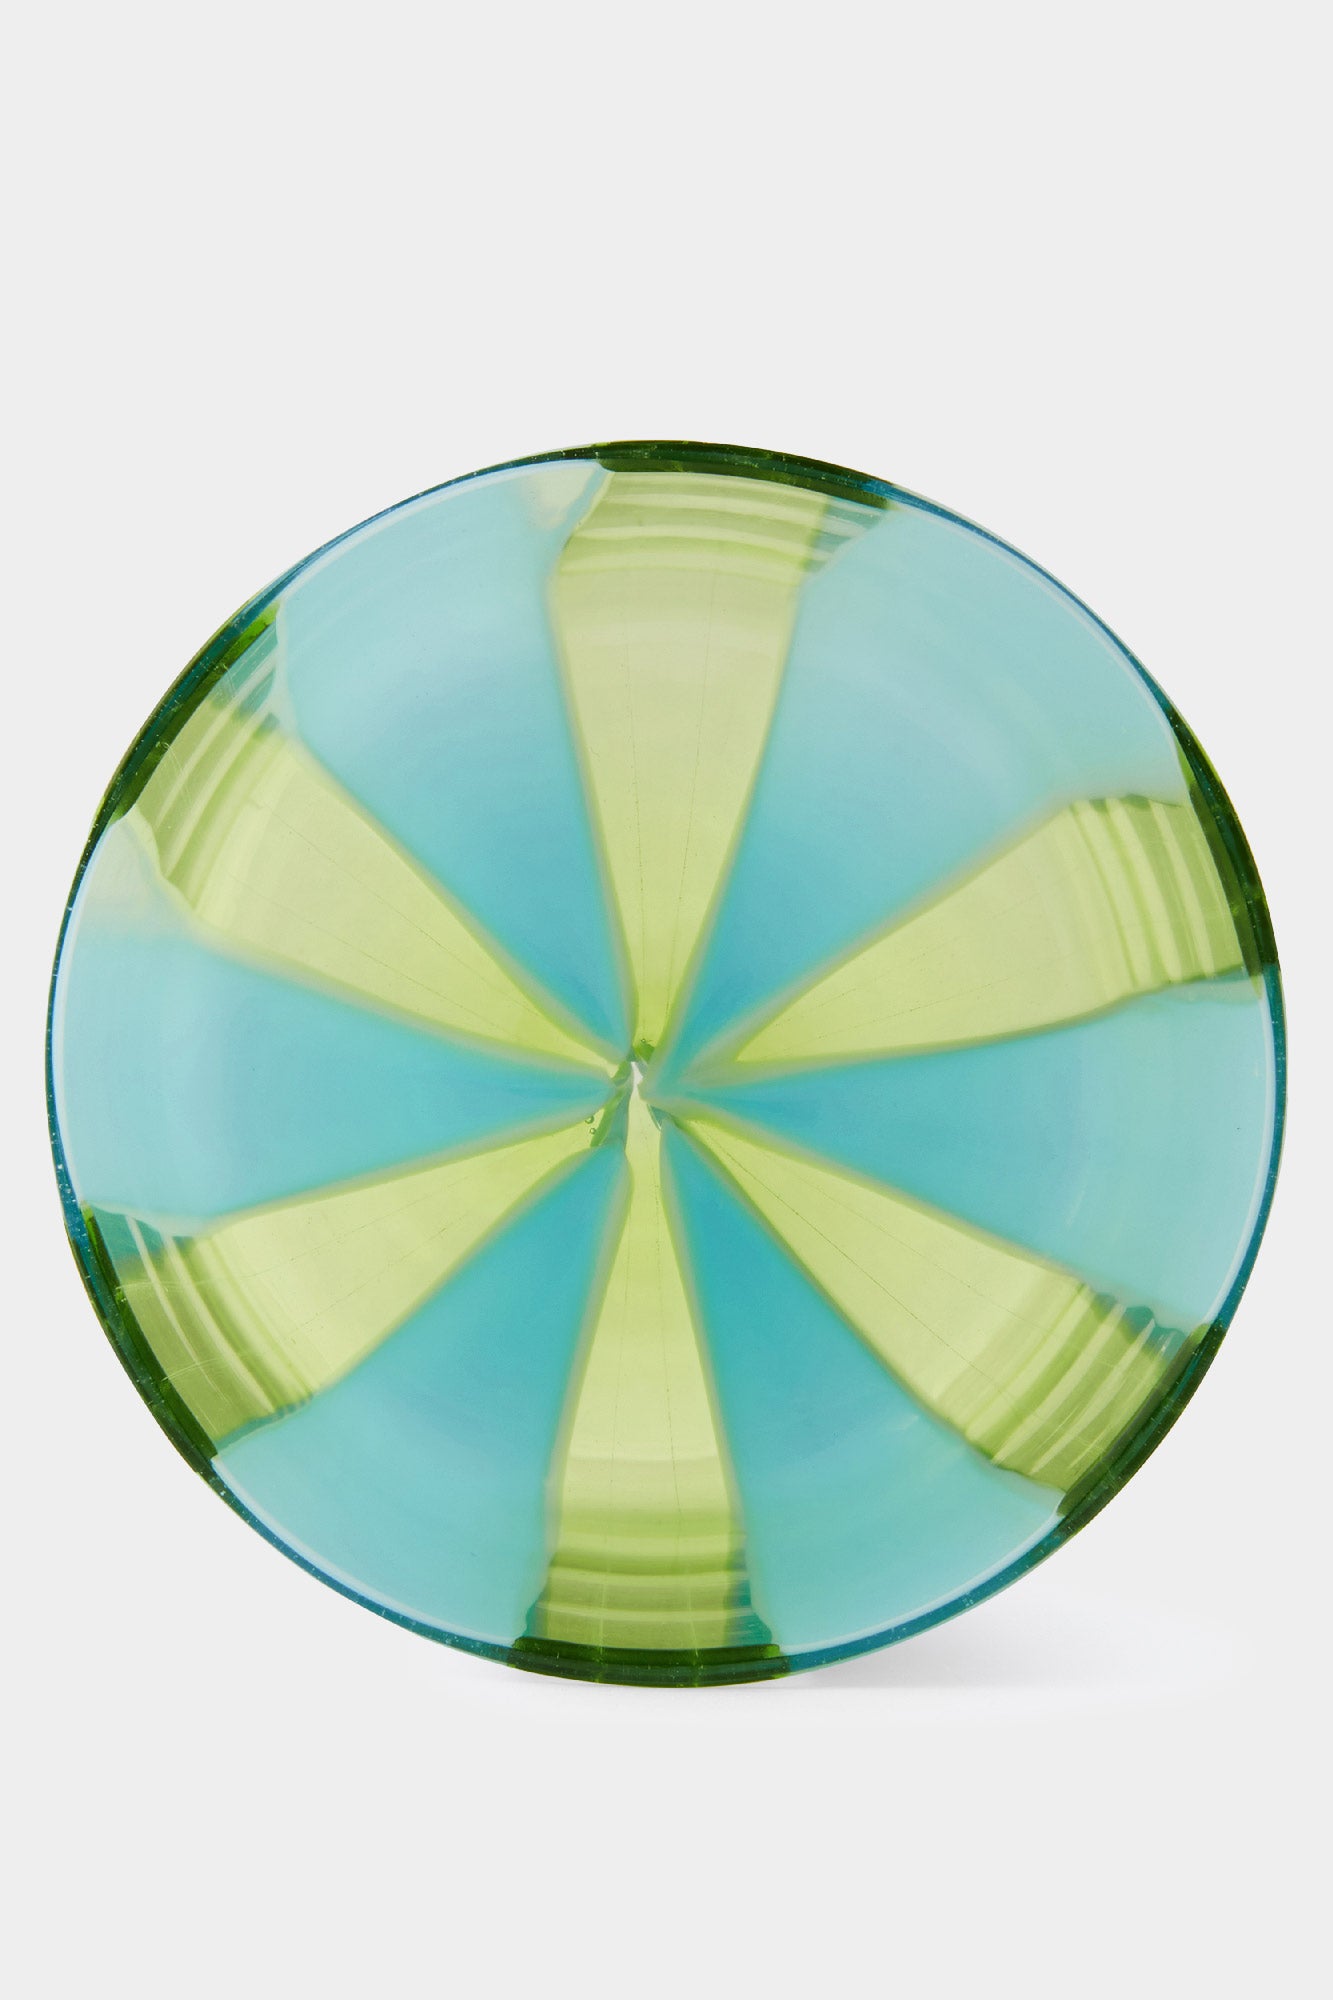 MURANO GLASS / azure & transparent yellow